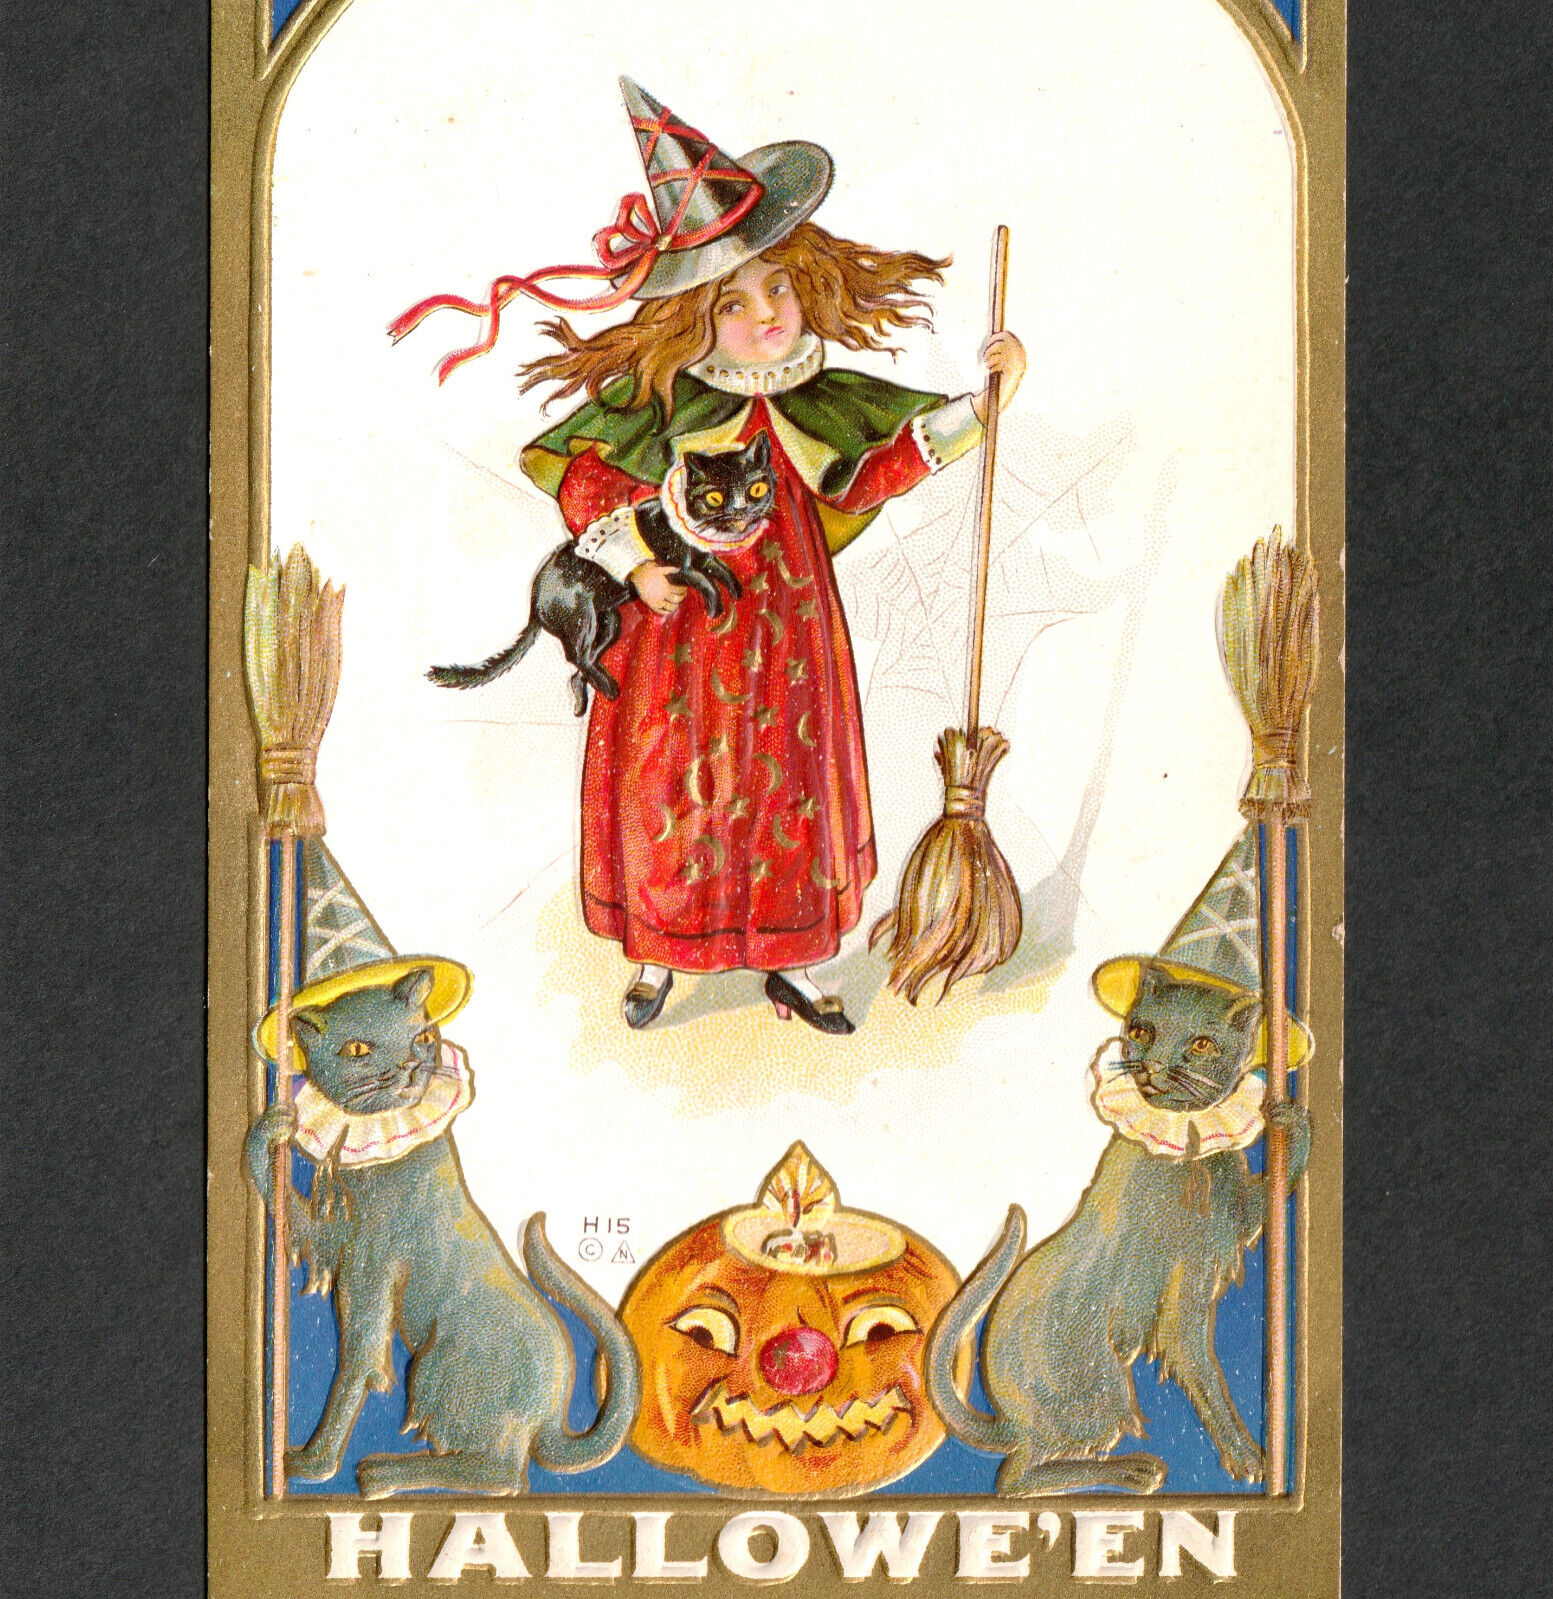 Halloween Witch Girl Nash H15 Embossed Pumpkin JOL Cats Broom Spiderweb PostCard